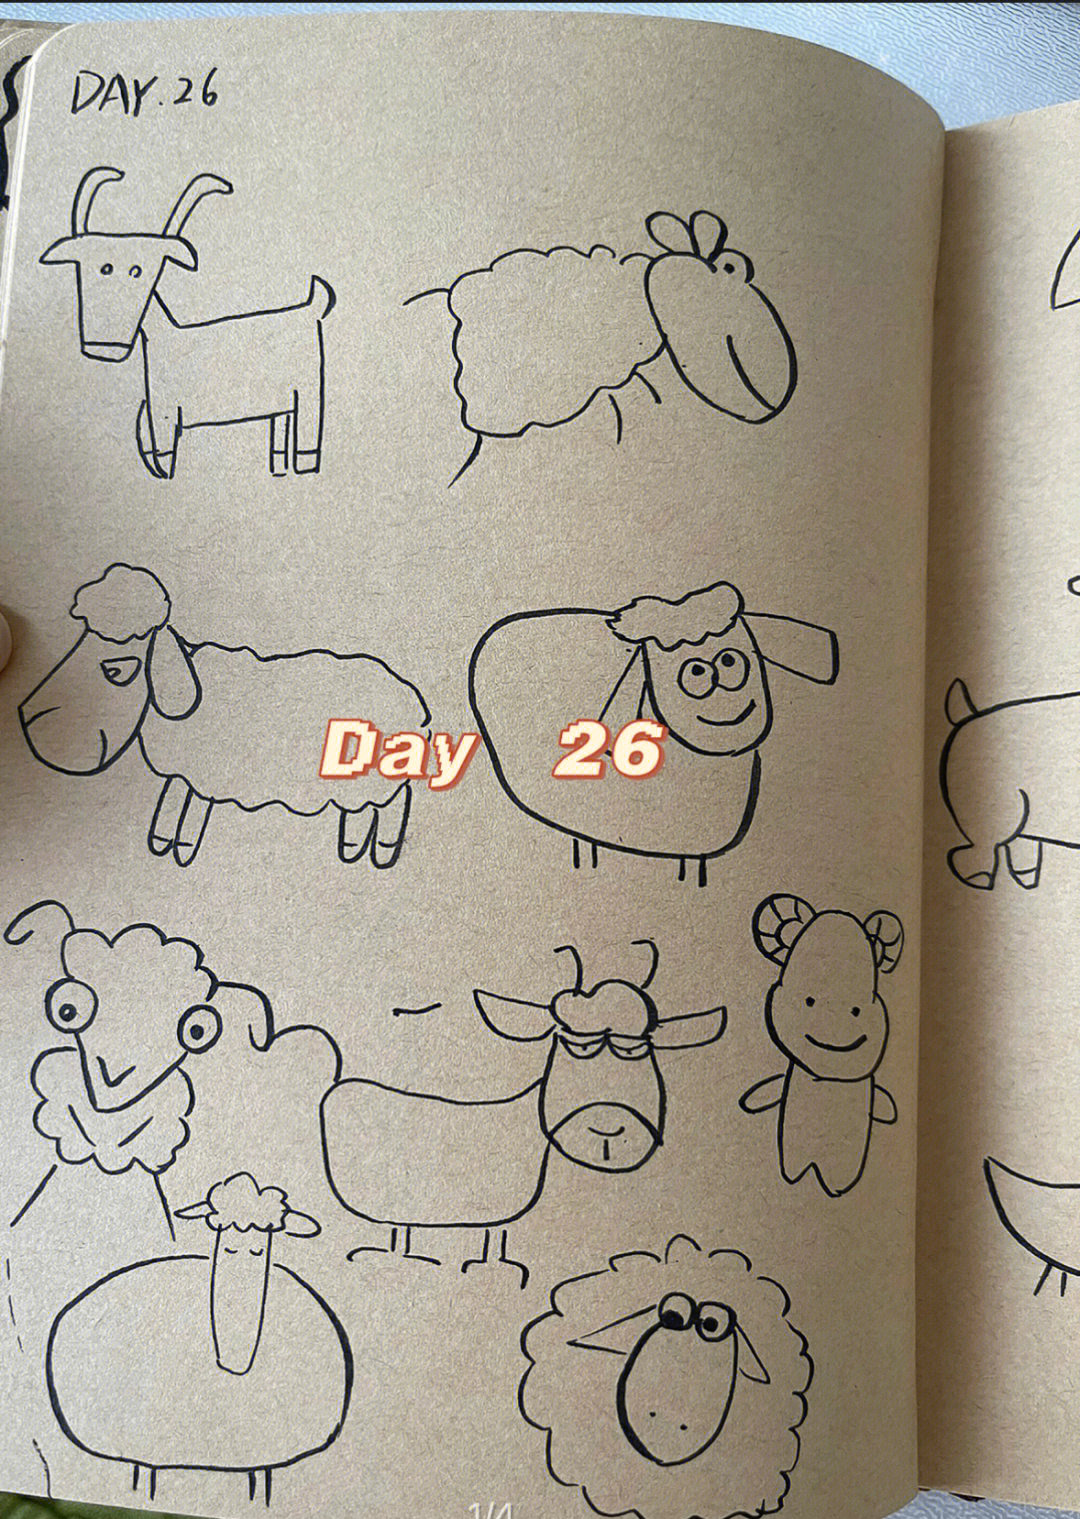 羊群的简单画法图片